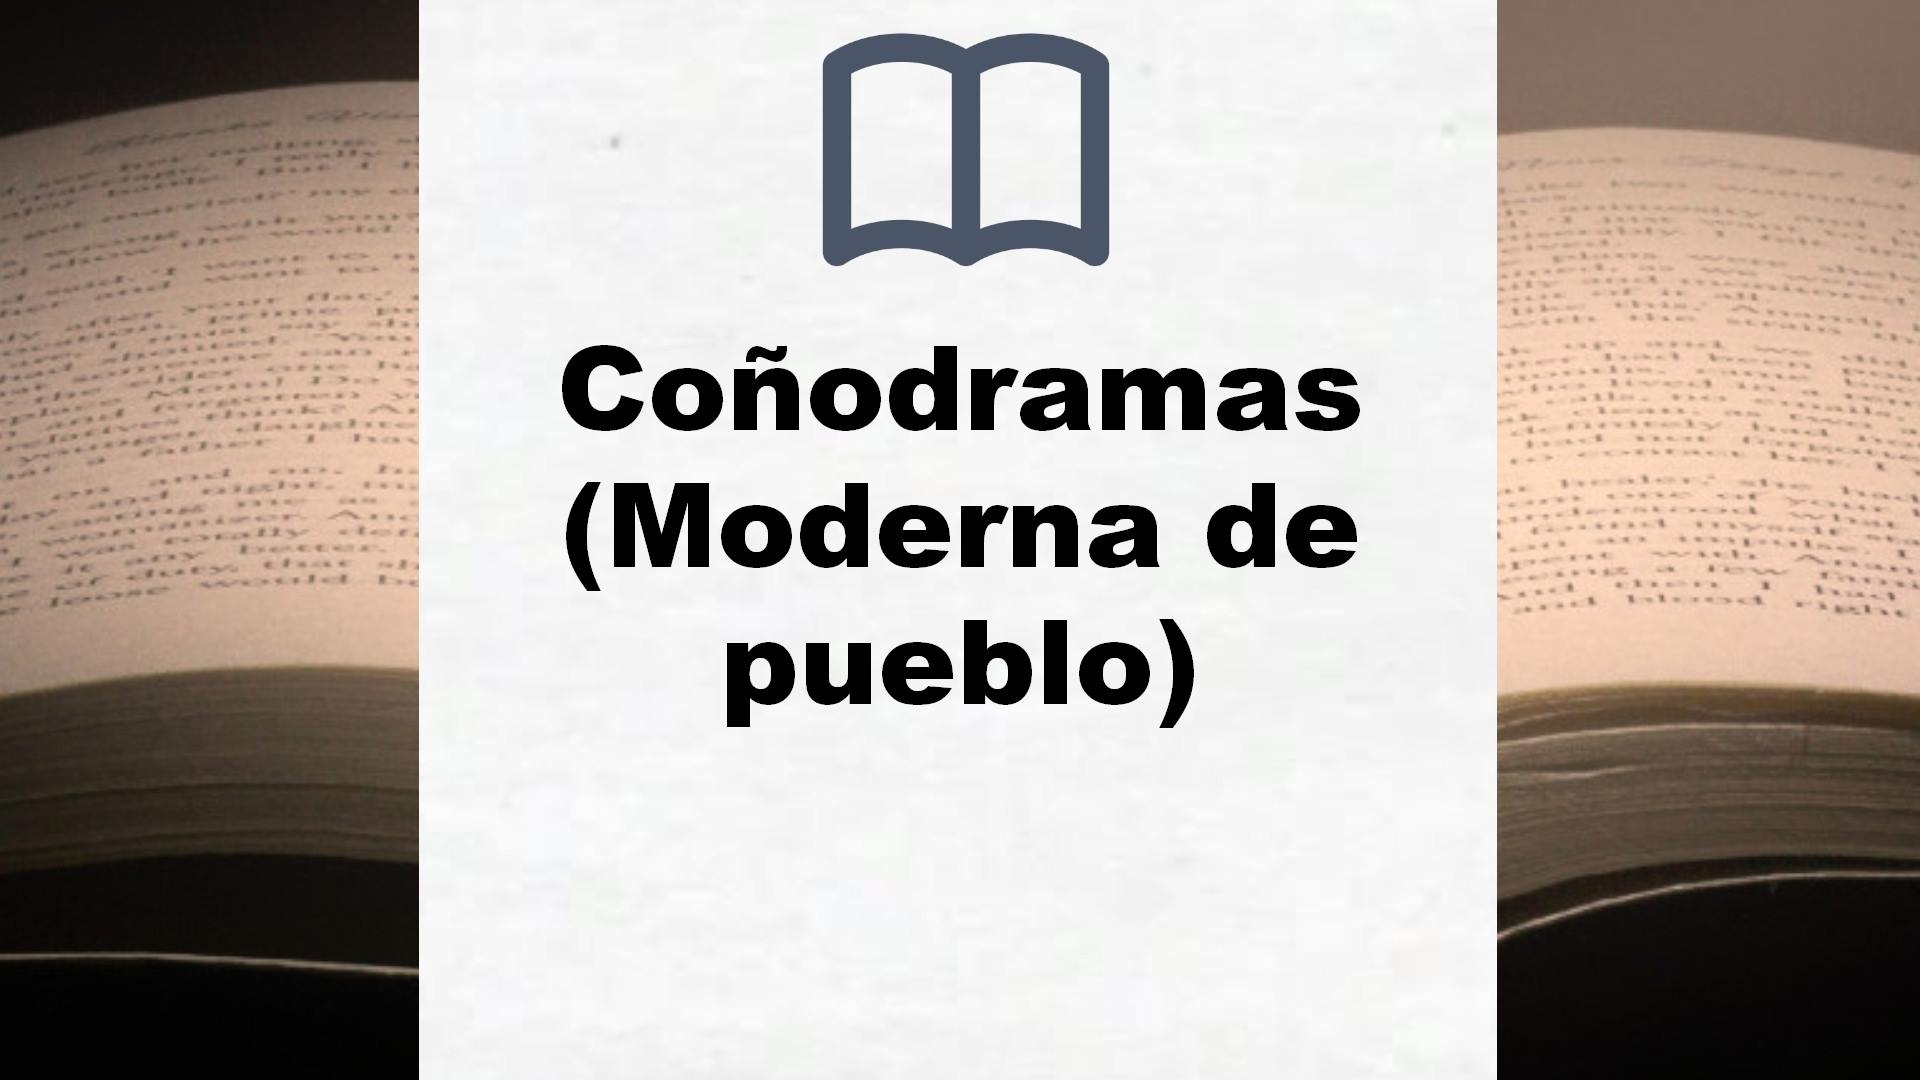 Coñodramas (Moderna de pueblo) – Reseña del libro